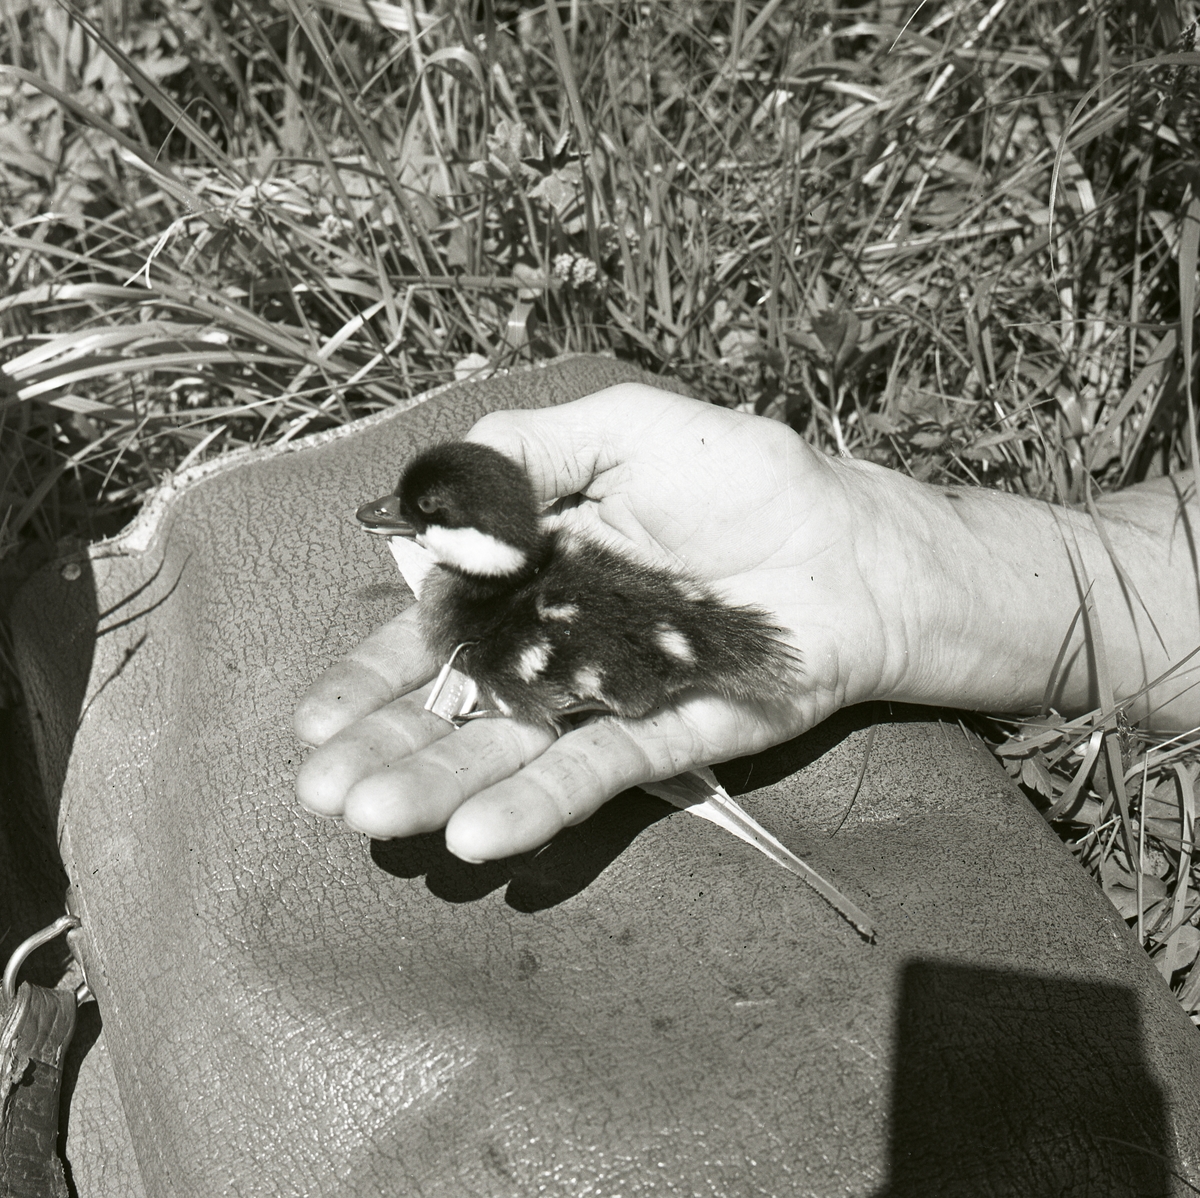 En person håller en ringmärkt knipunge i sin hand, juni 1962. I gräset intill personen ligger en väska.